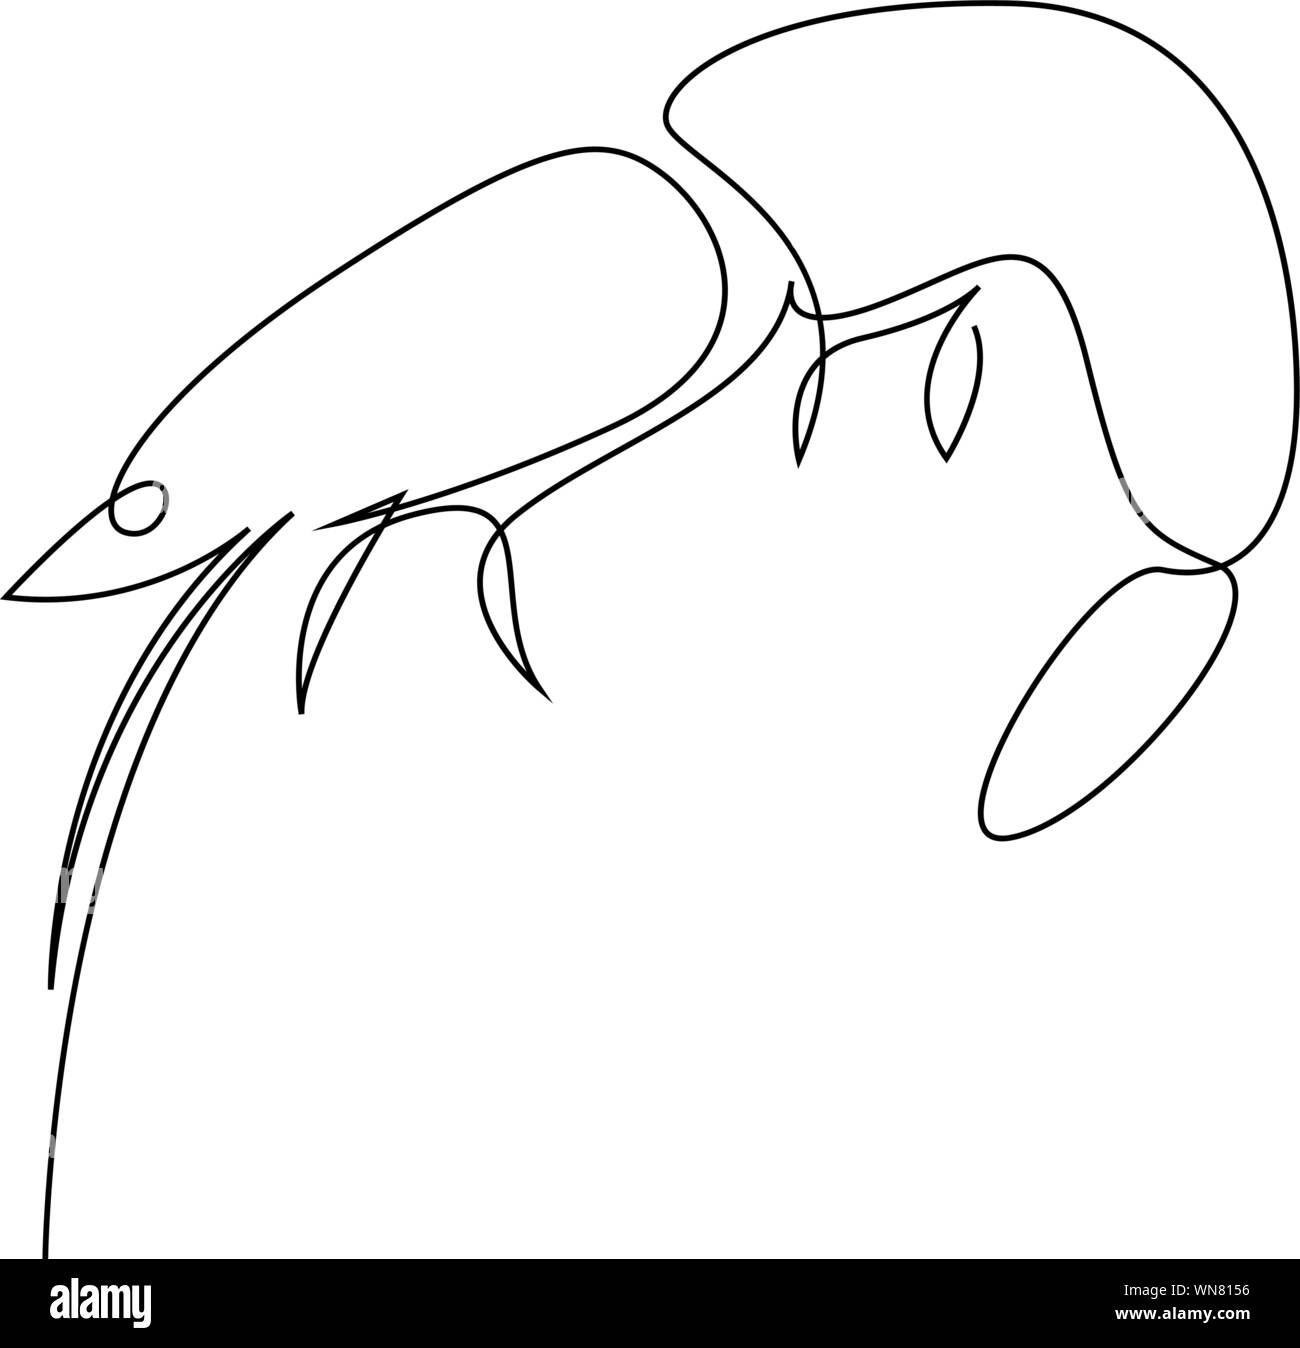 Illustration de la crevette dessiné par une ligne. Style minimaliste vector illustration Illustration de Vecteur